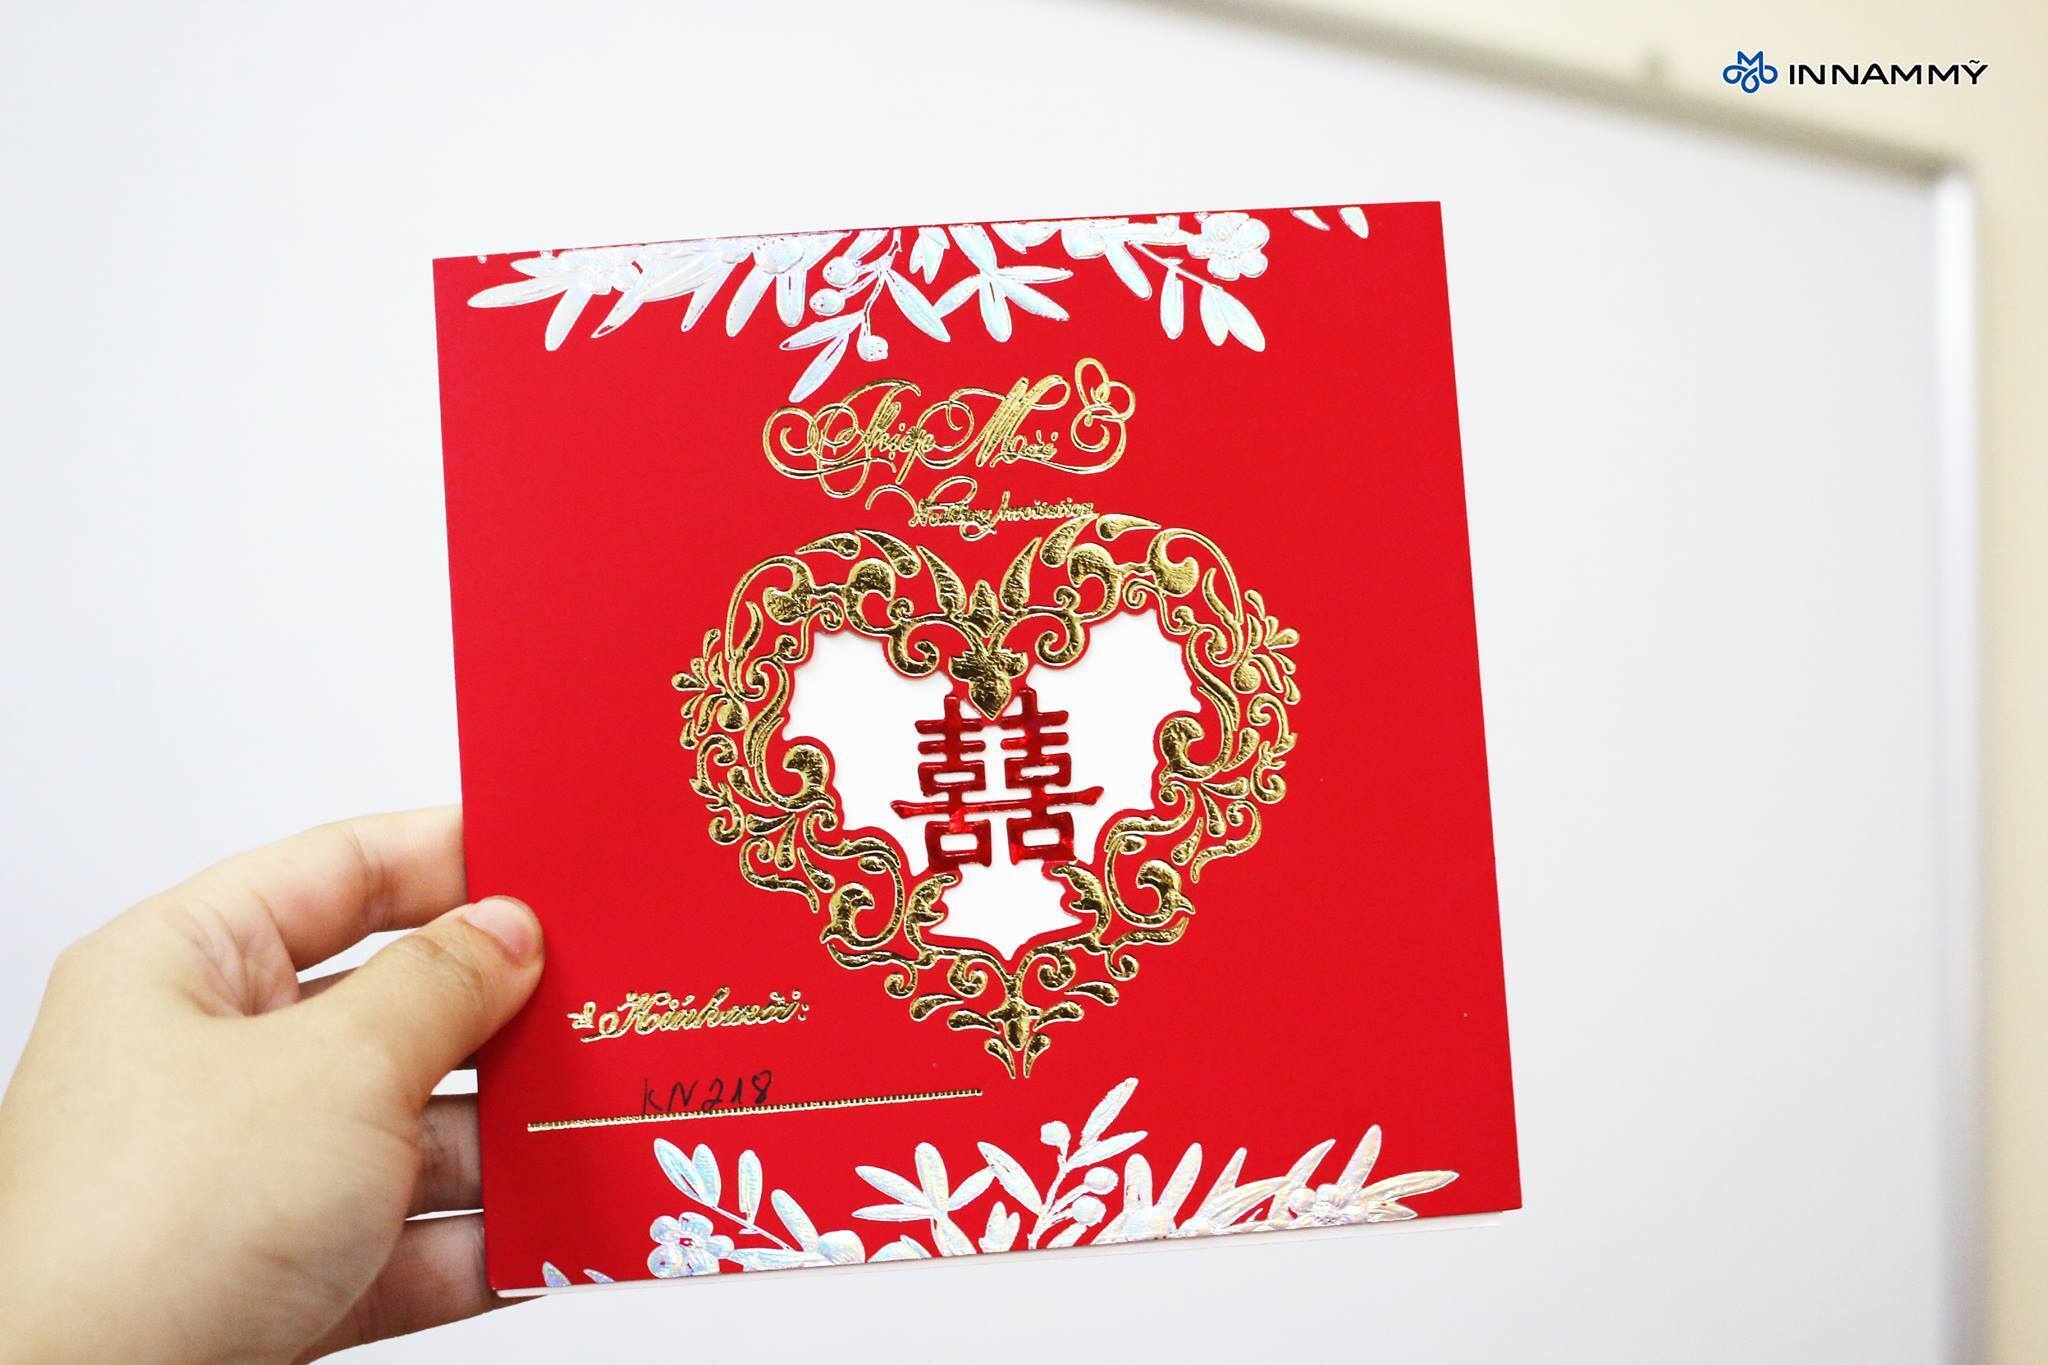 Thiệp cưới DQ2022 đỏ nhung  In ấn Ưu Việt